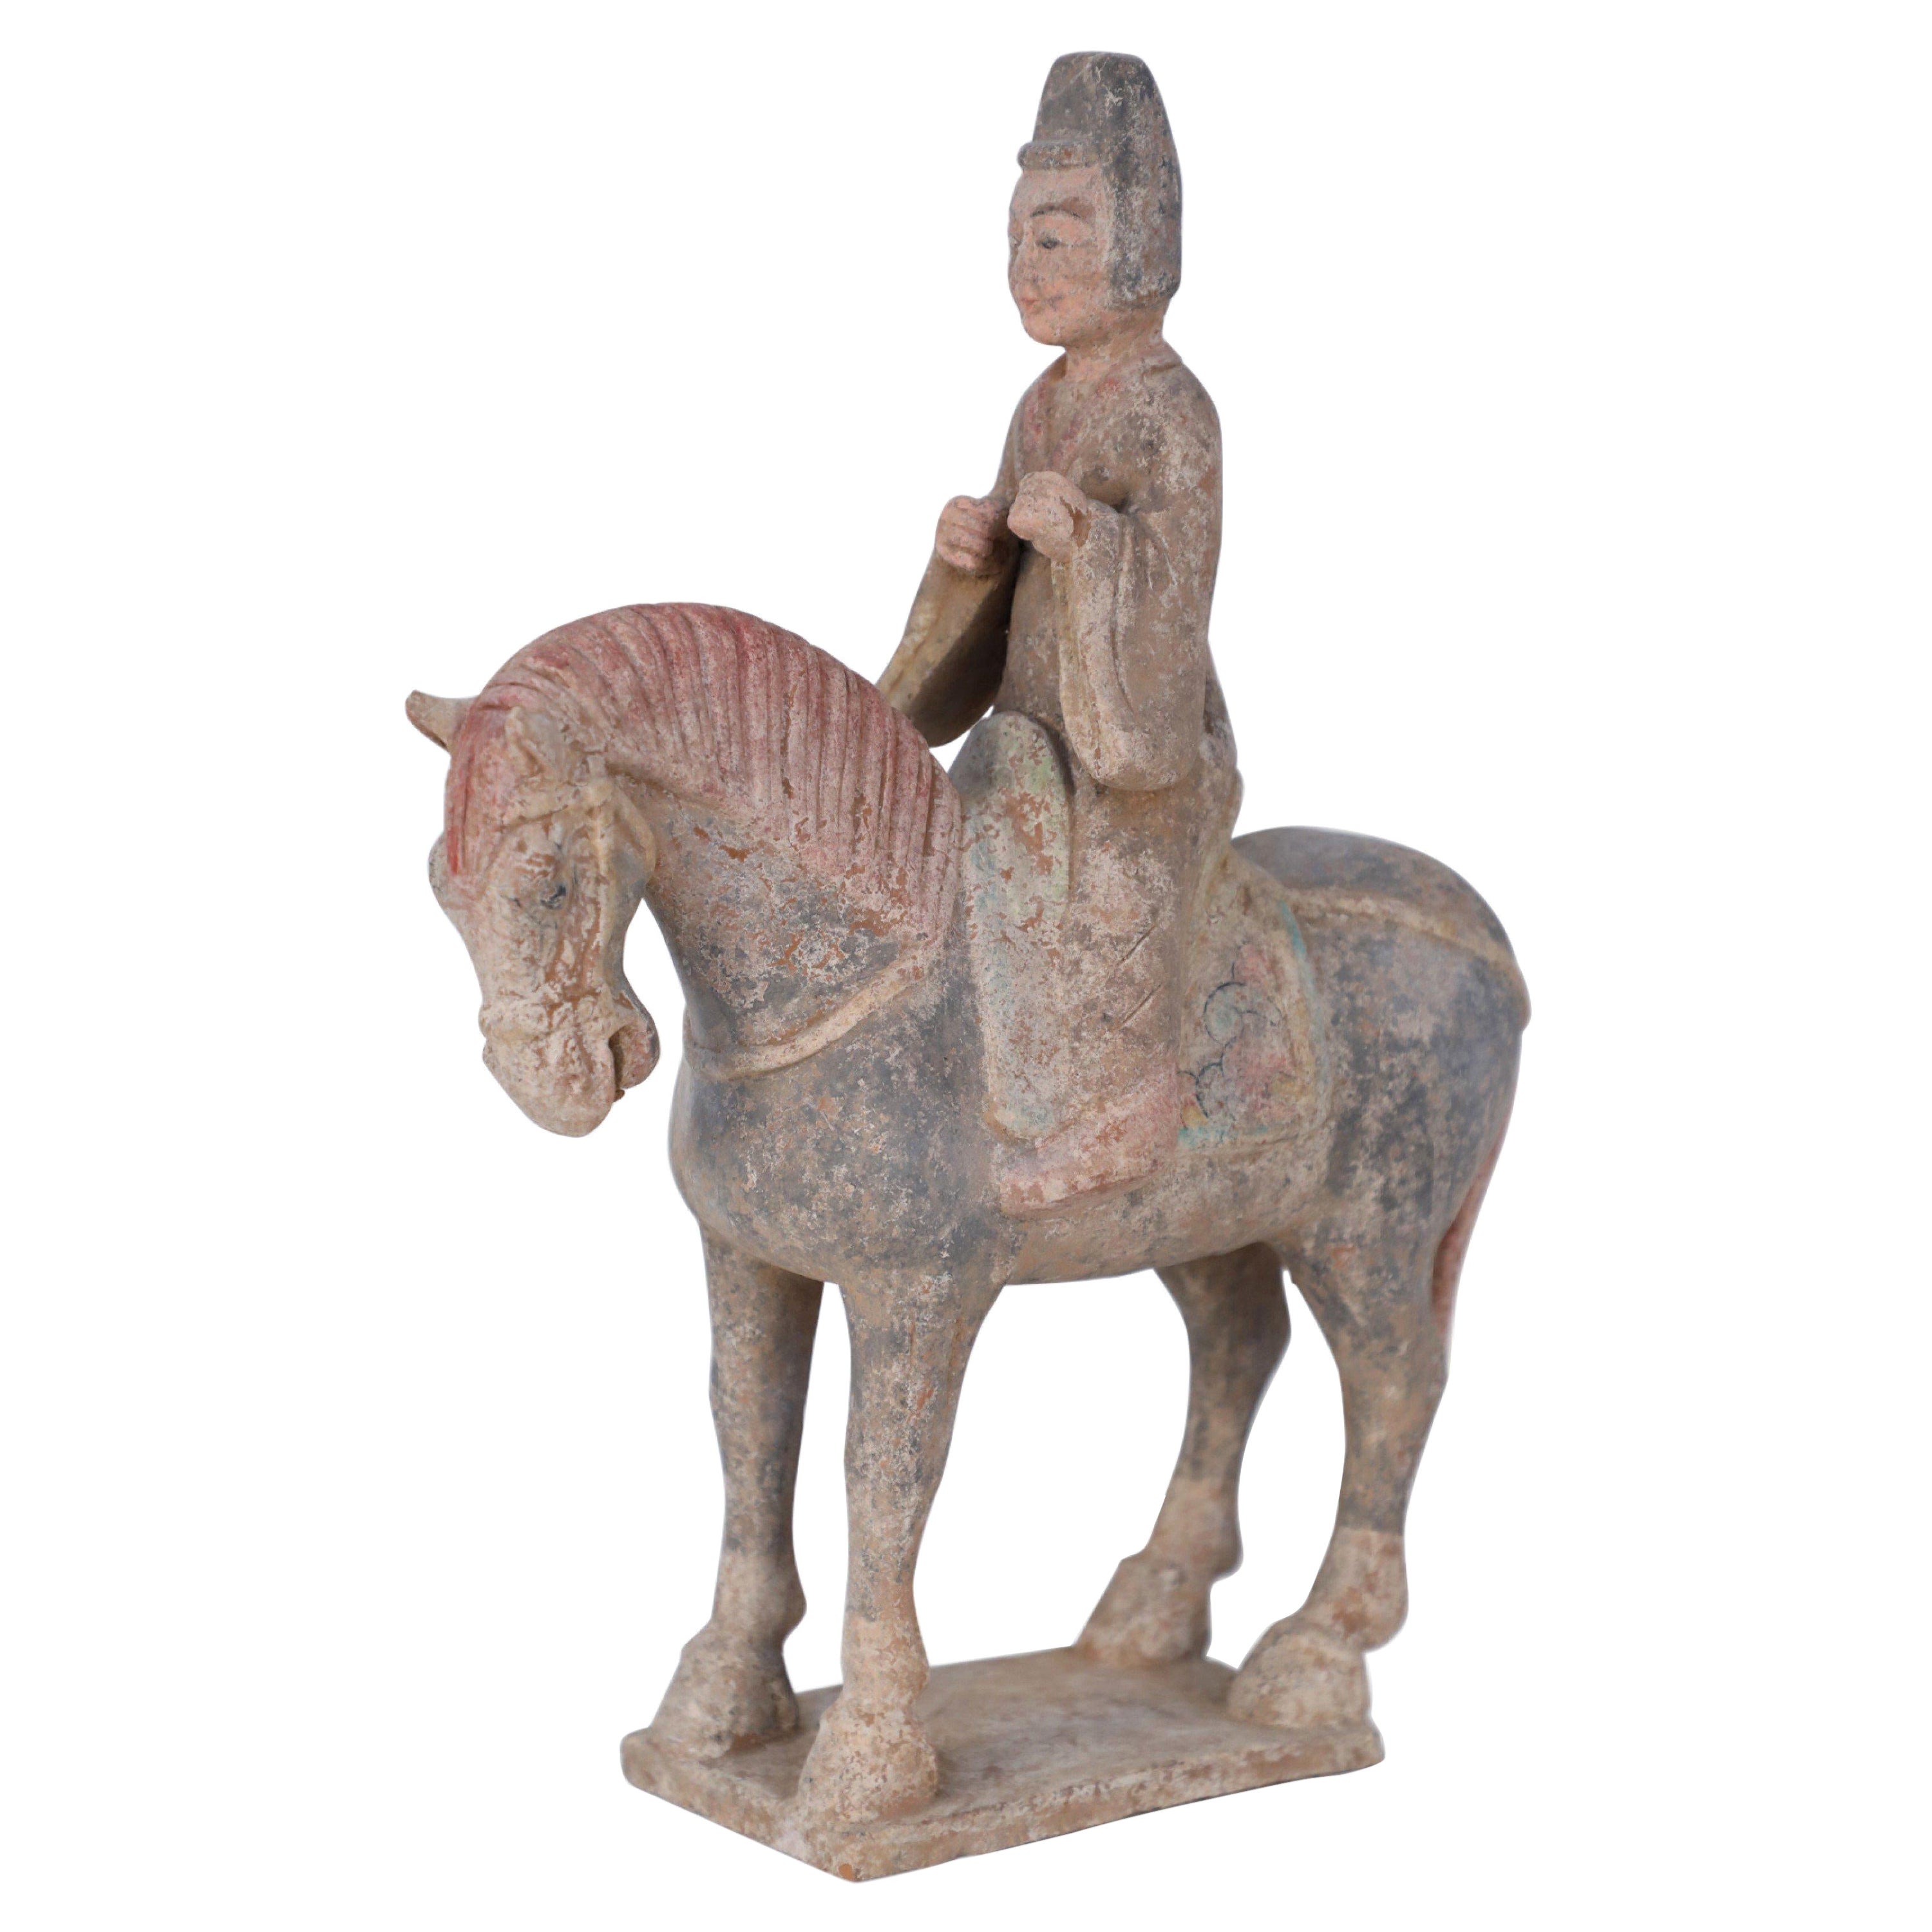 Statue funéraire chinoise en terre cuite de style Tang Dynasty représentant un cheval et un cavalier